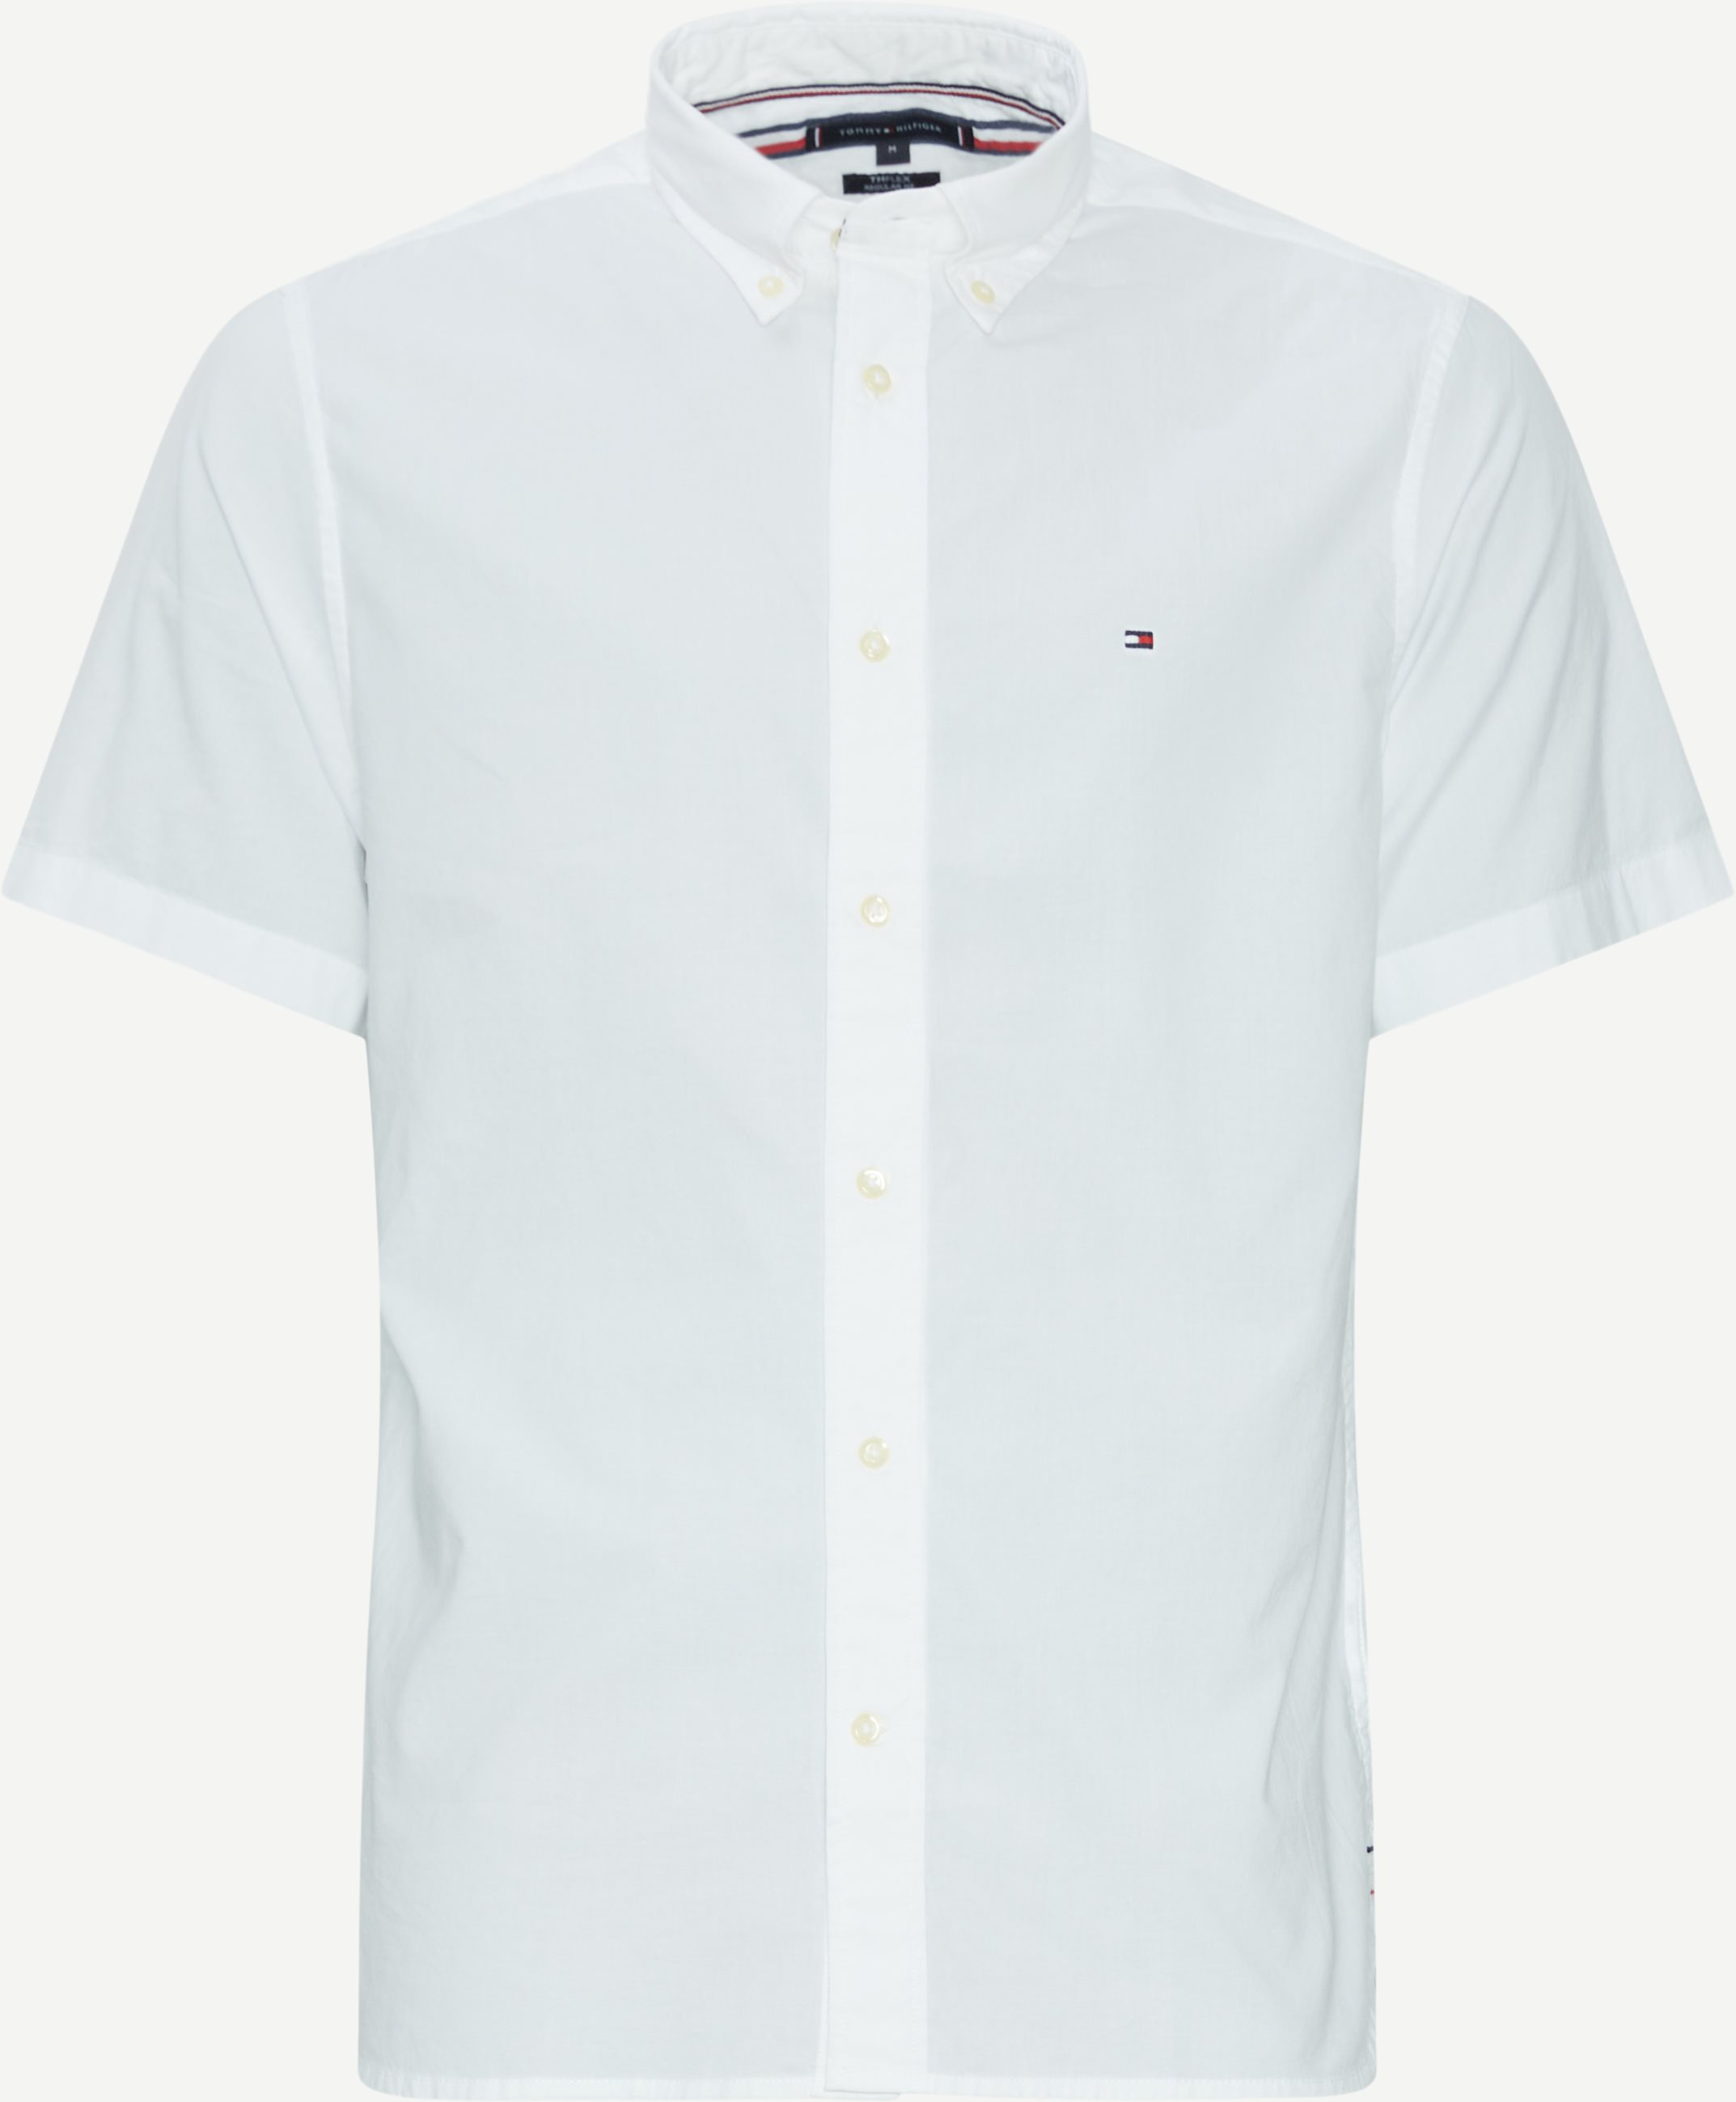 Tommy Hilfiger Kortærmede skjorter 33809 FLEX POPLIN RF SHIRT S/S Hvid